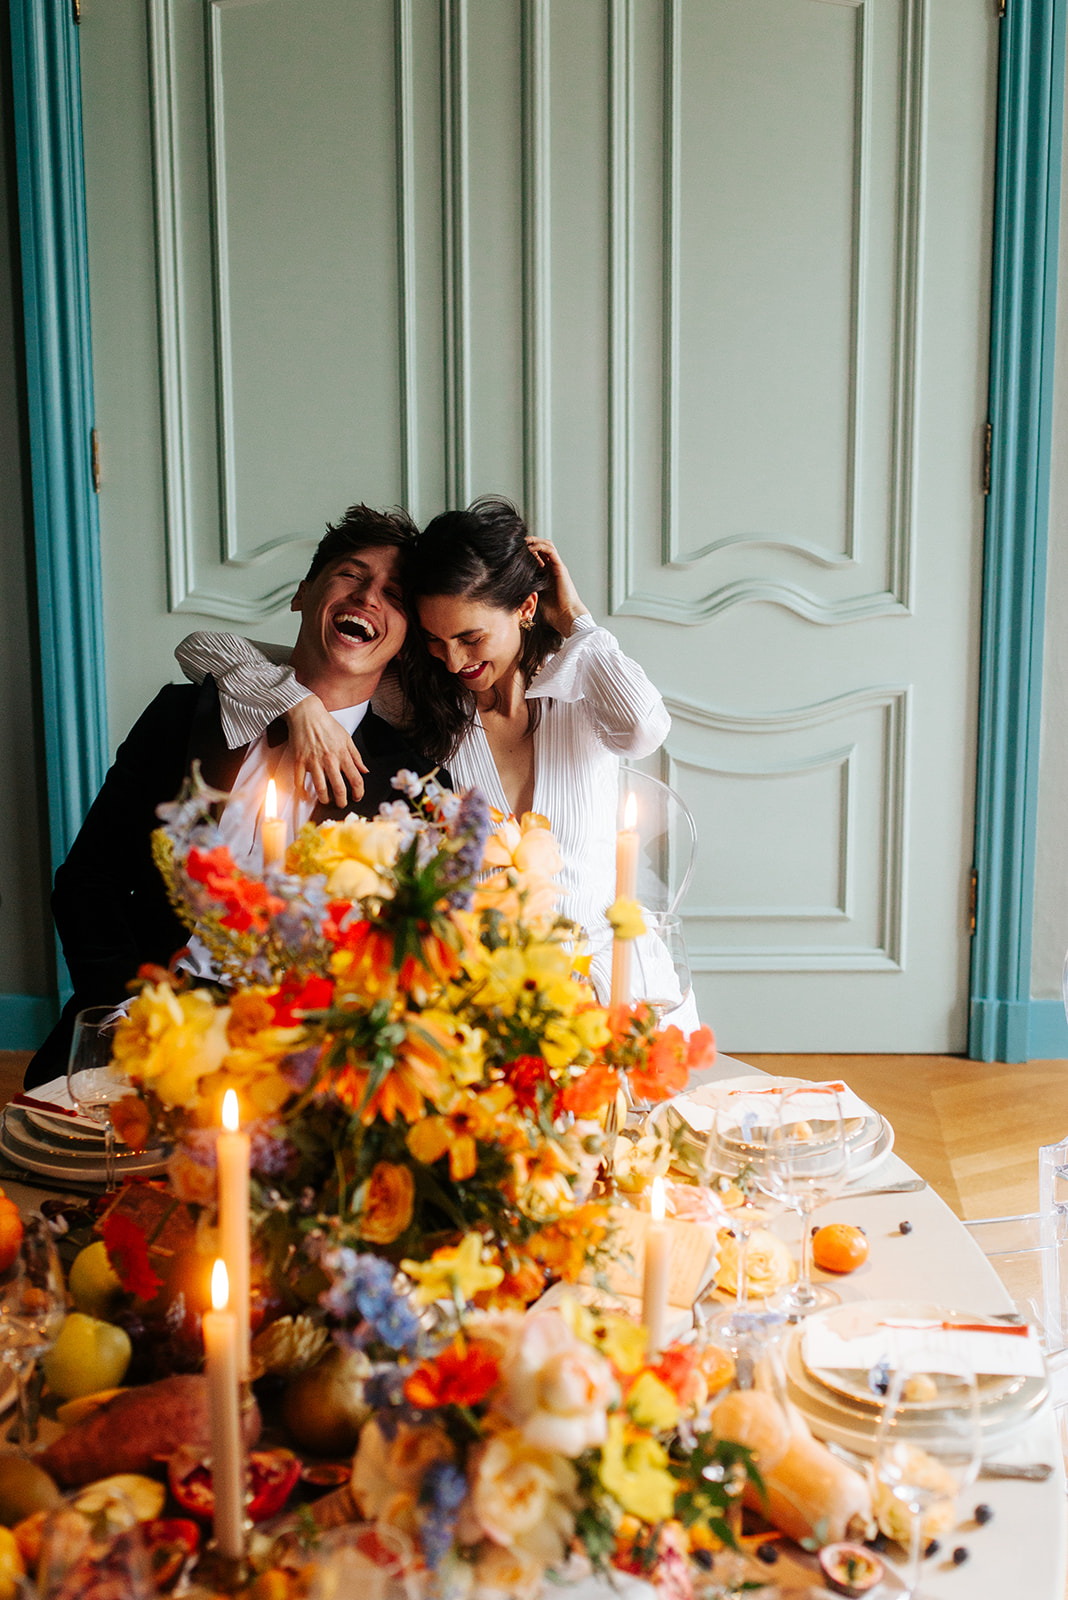 Zeer kleurrijke afbeelding, met oranje, gele, rode en blauwe bloemen die in een prachtig boeket op de tafel staan. De tafel is netjes gedekt en er staan kaarsen op tafel. Verder is de tafel versierd met fruit. Twee gelukkige mensen omhelzen elkaar en lachen, in een keurig onderhouden, nette kamer. De stijl van het huis lijkt een oud landhuis.